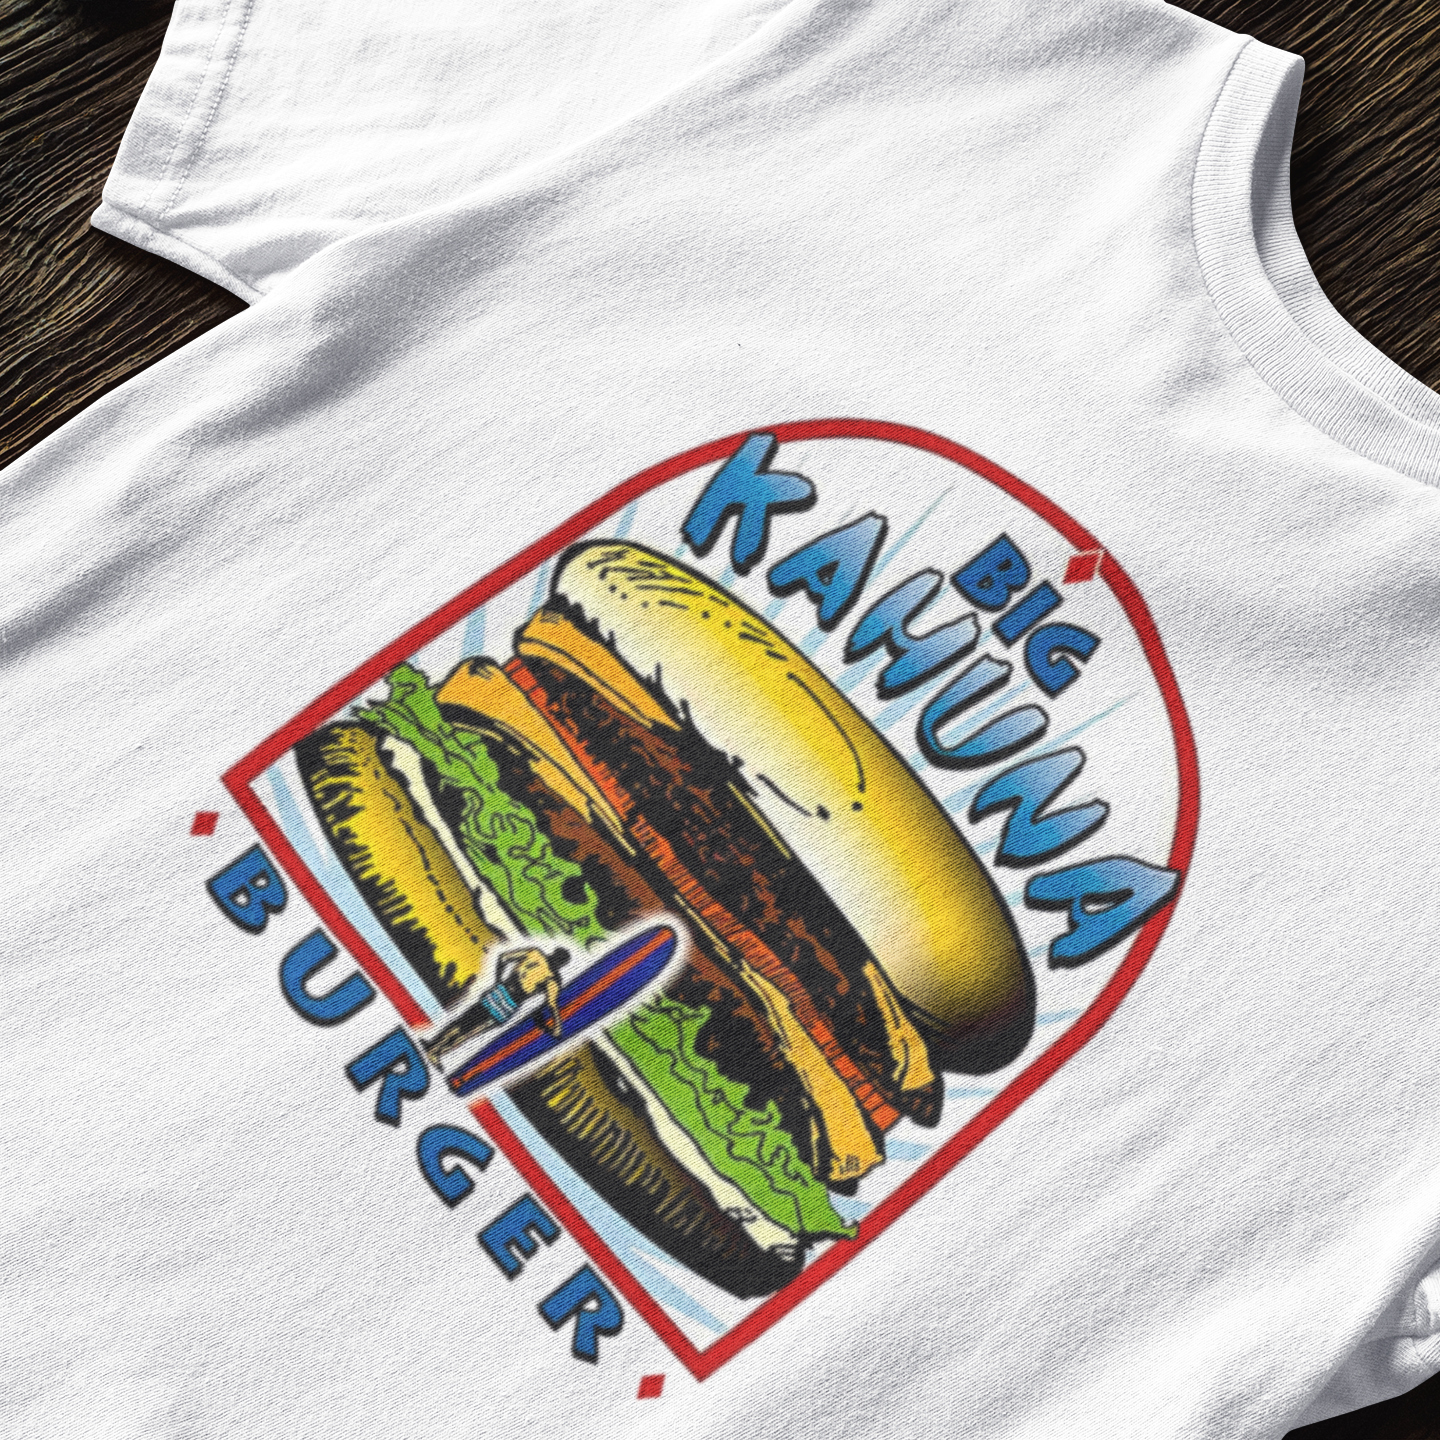 Big Kahuna Burger Pulp Fiction - T-shirt